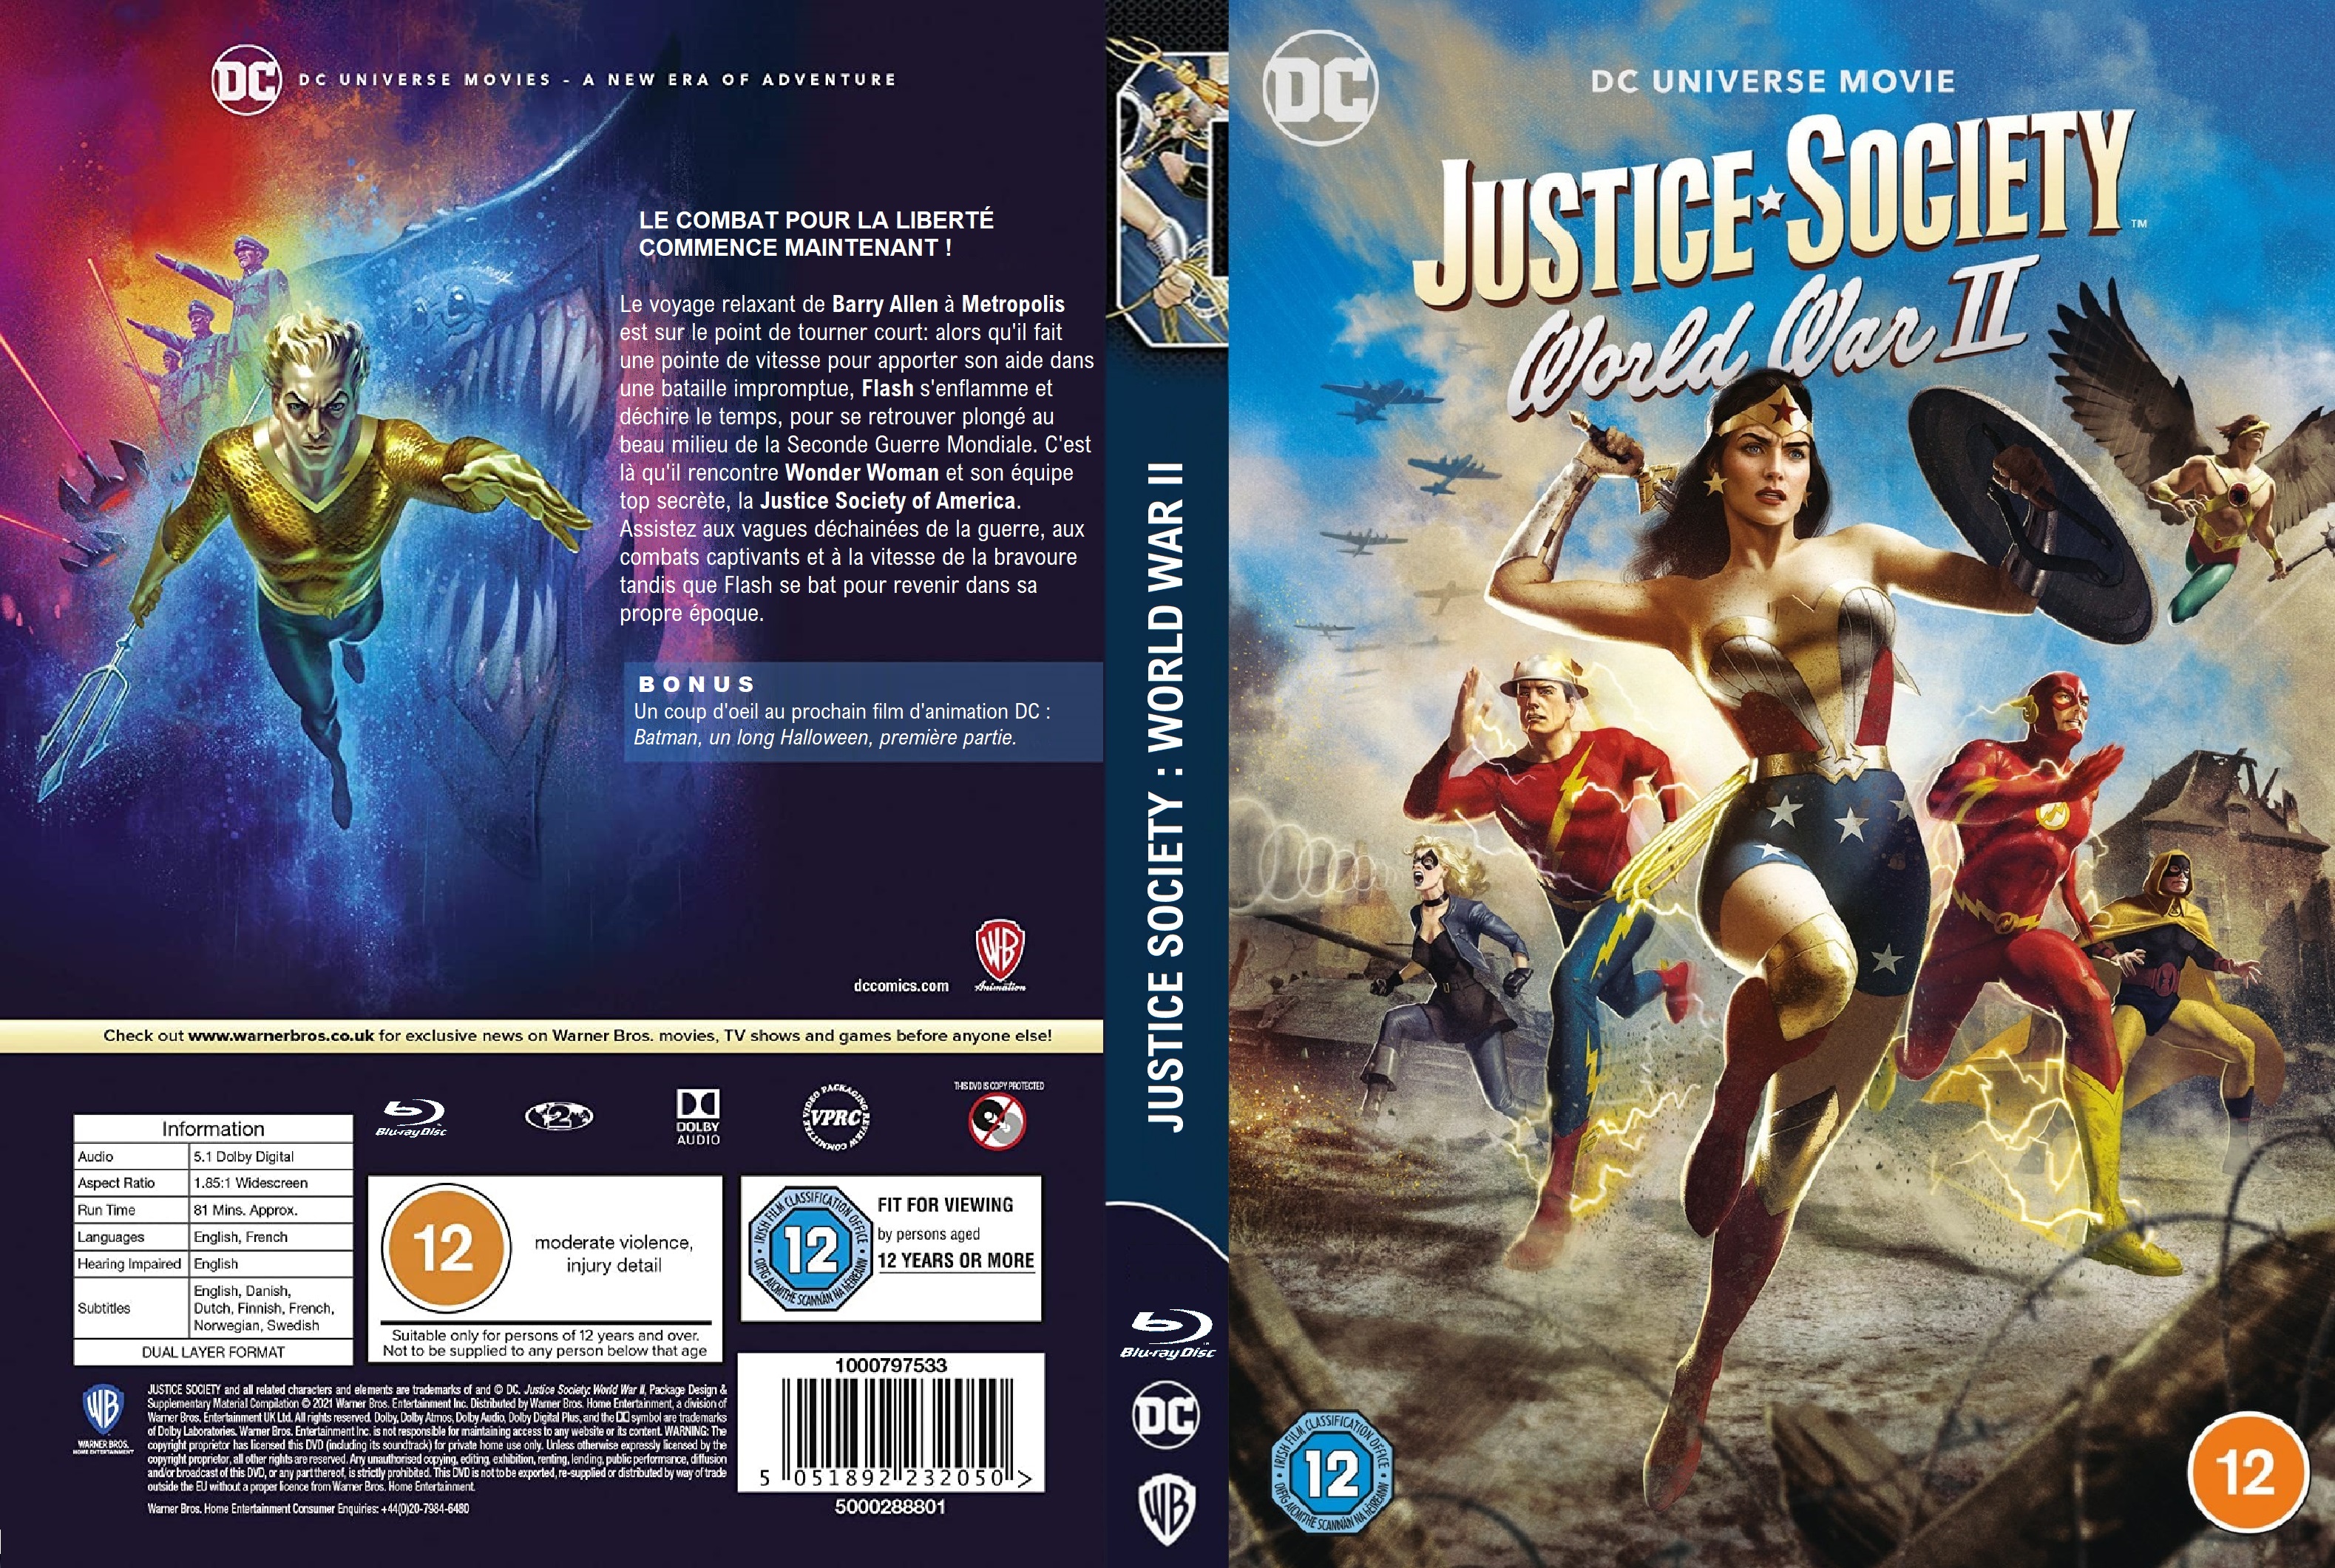 Jaquette DVD Justice Society World War II custom v2